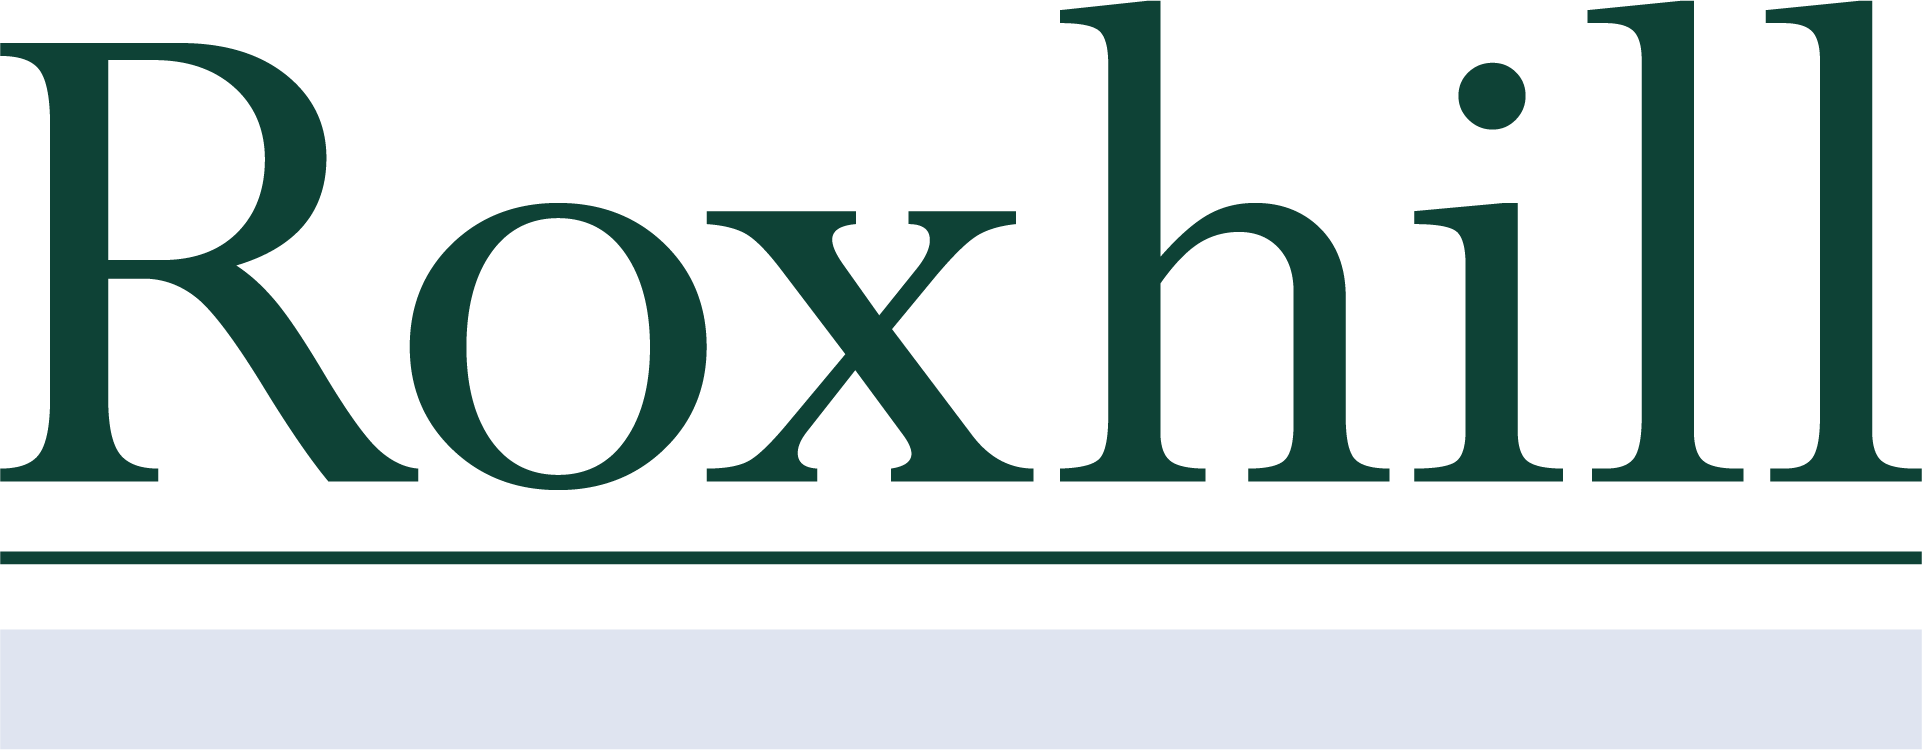 Roxhill Media company logo